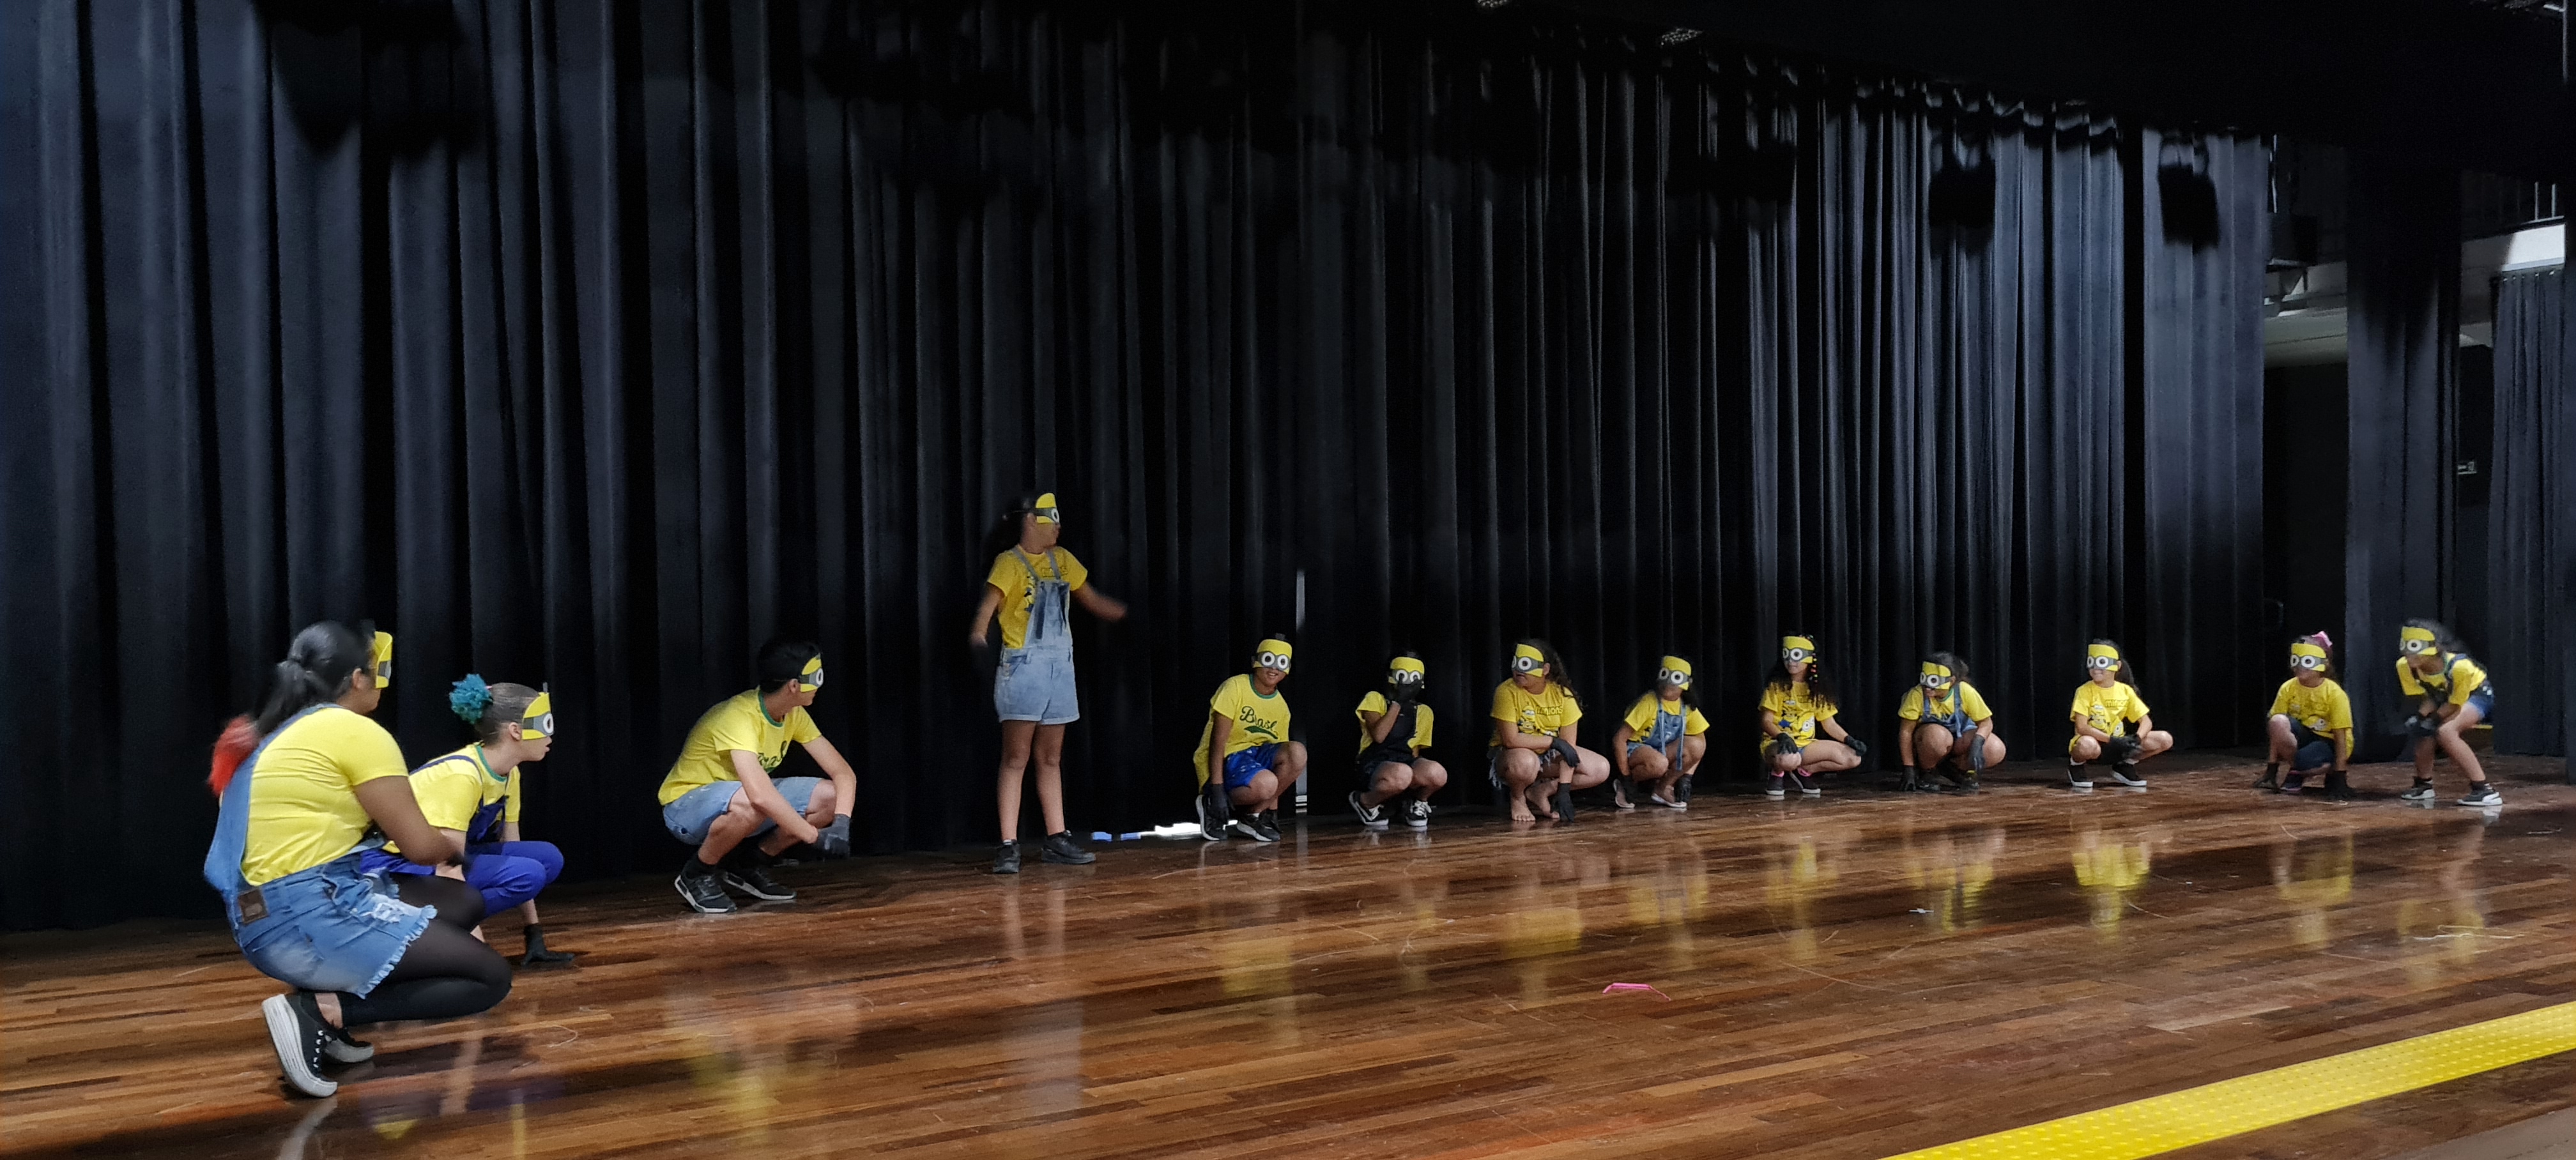 Com roupas amarelas e usando óculos, crianças estão no palco do auditório do CEU Freguesia do Ó realizando apresentação para plateia.